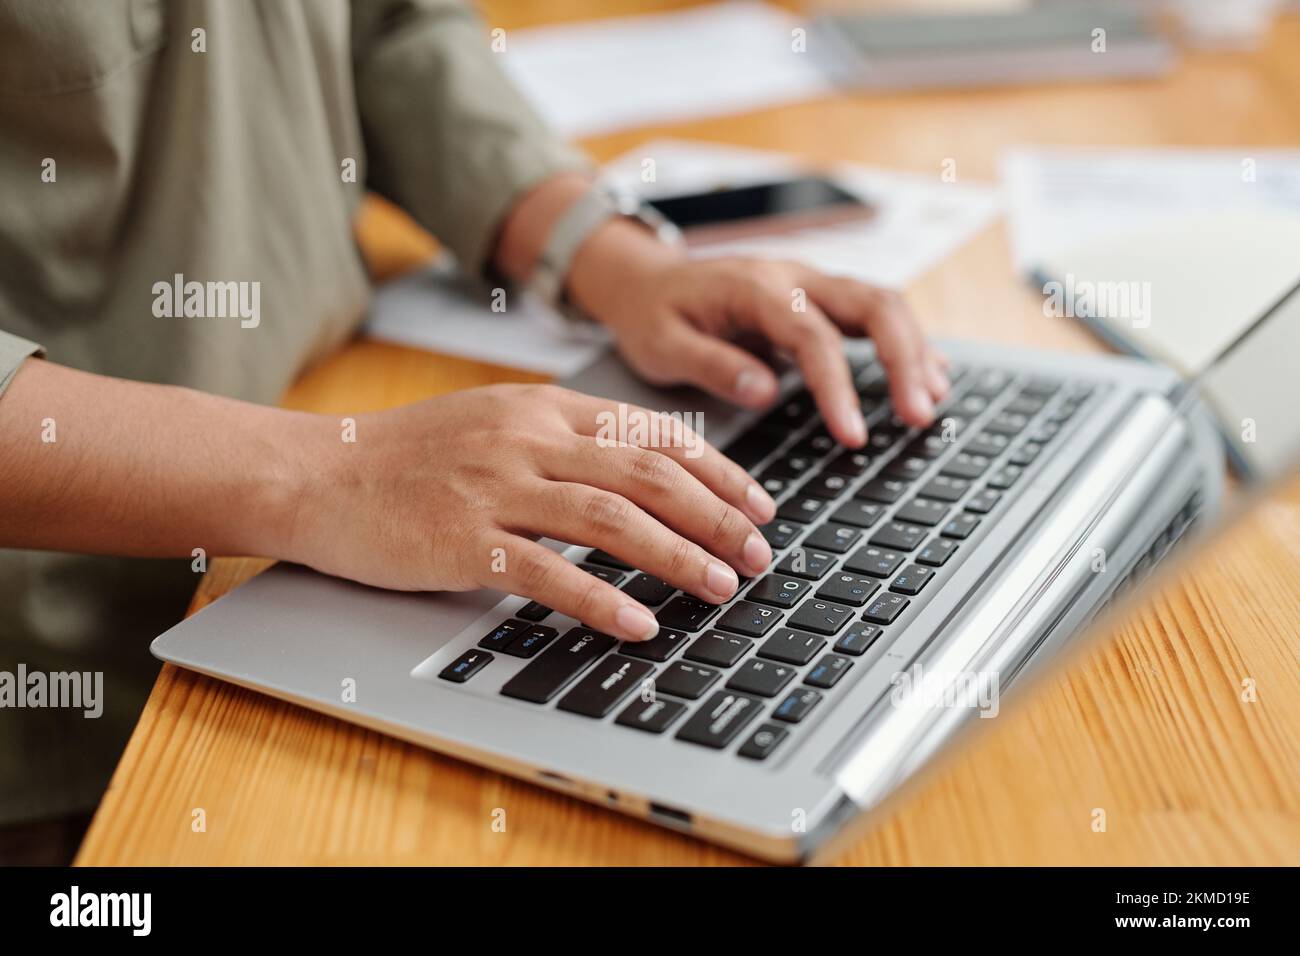 Selektiver Fokus auf die rechte Hand einer jungen Mitarbeiterin und Tastatur des Laptops bei der Online-Kommunikation oder dem Netzwerk am Arbeitsplatz Stockfoto